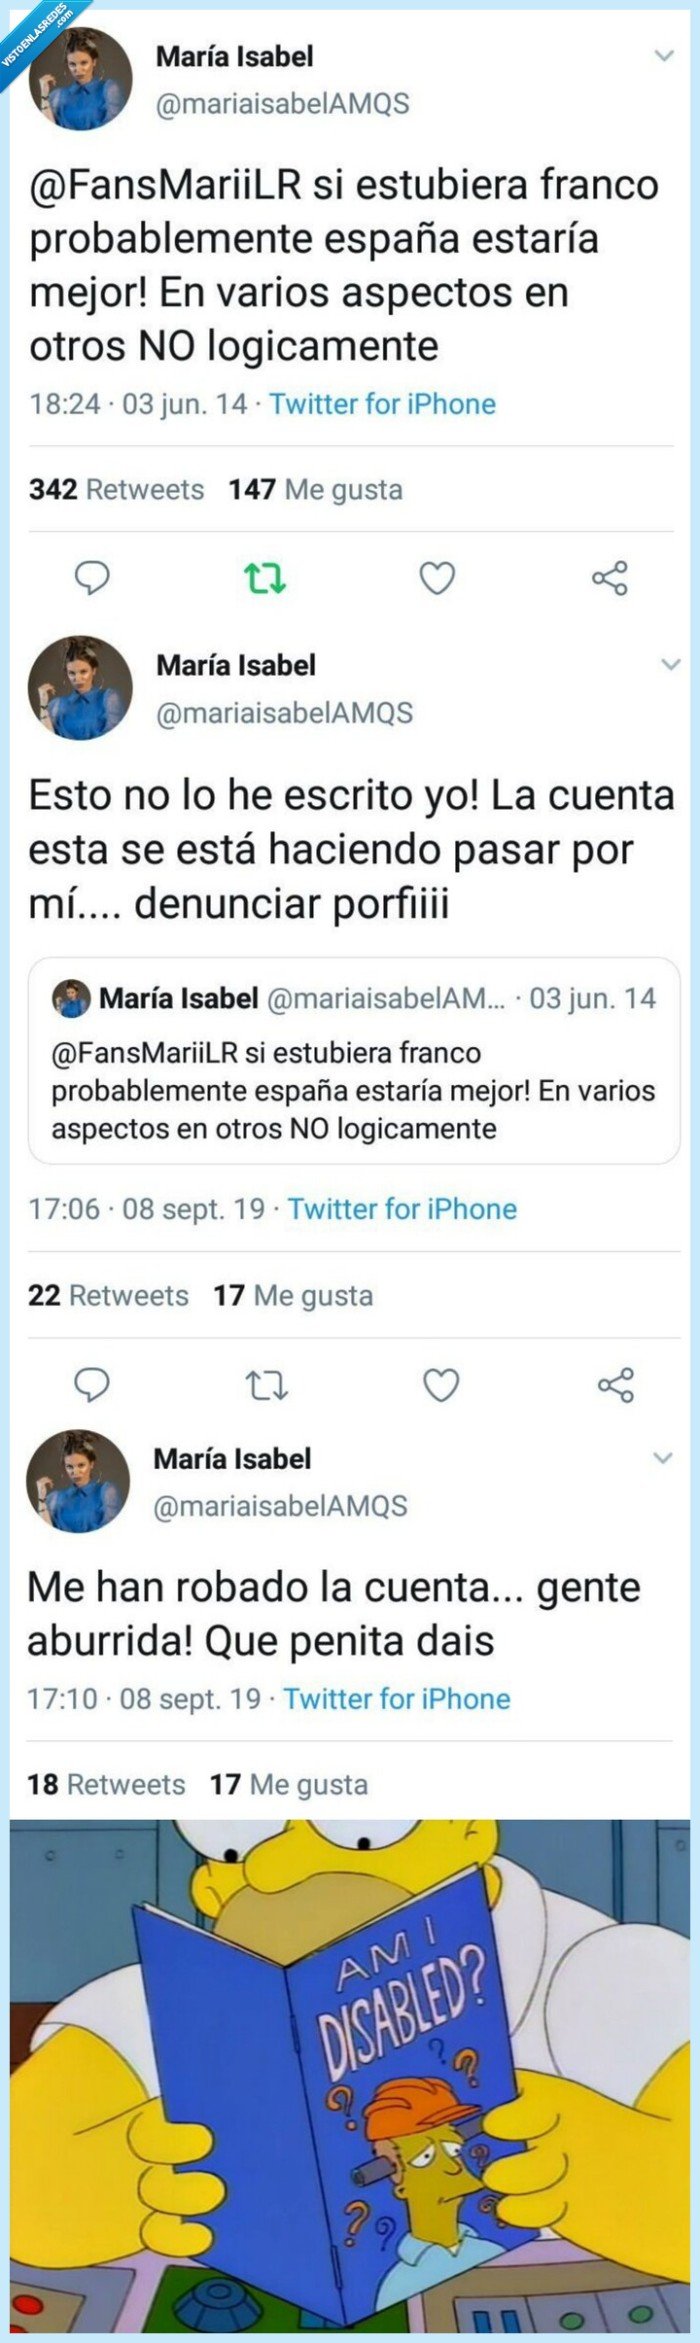 526464 - Salen a la luz tweets pro-franquistas de María Isabel, la de antes muerta que sencilla, y ella lo niega todo